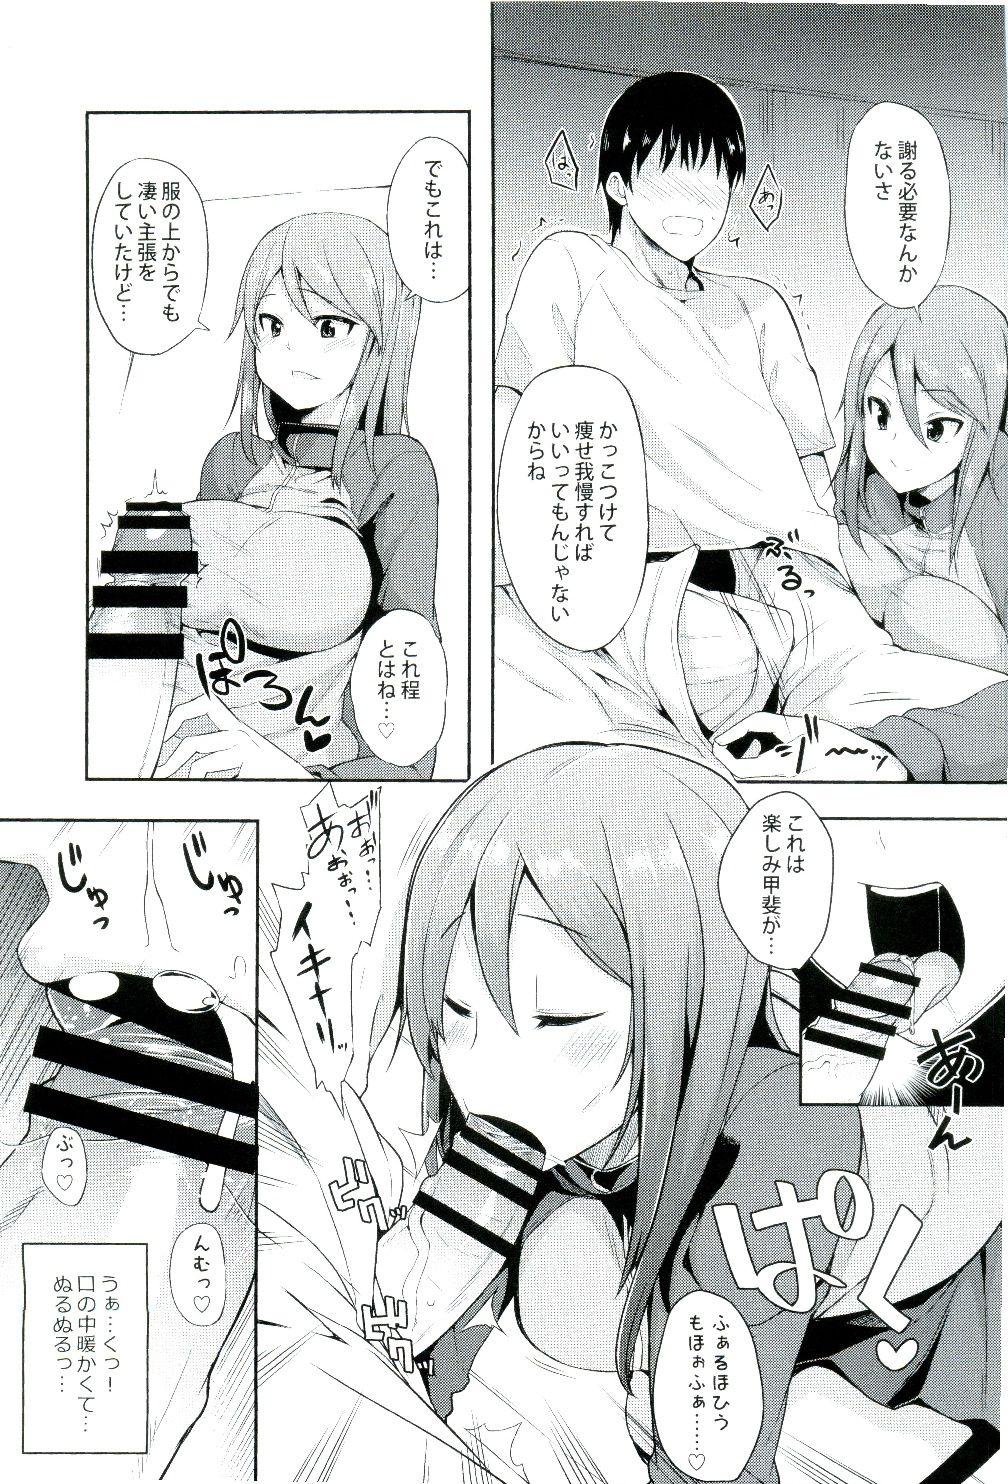 Ball Licking Daiji na koto wa koko ni Tsumatte Iru - Girls und panzer College - Page 5